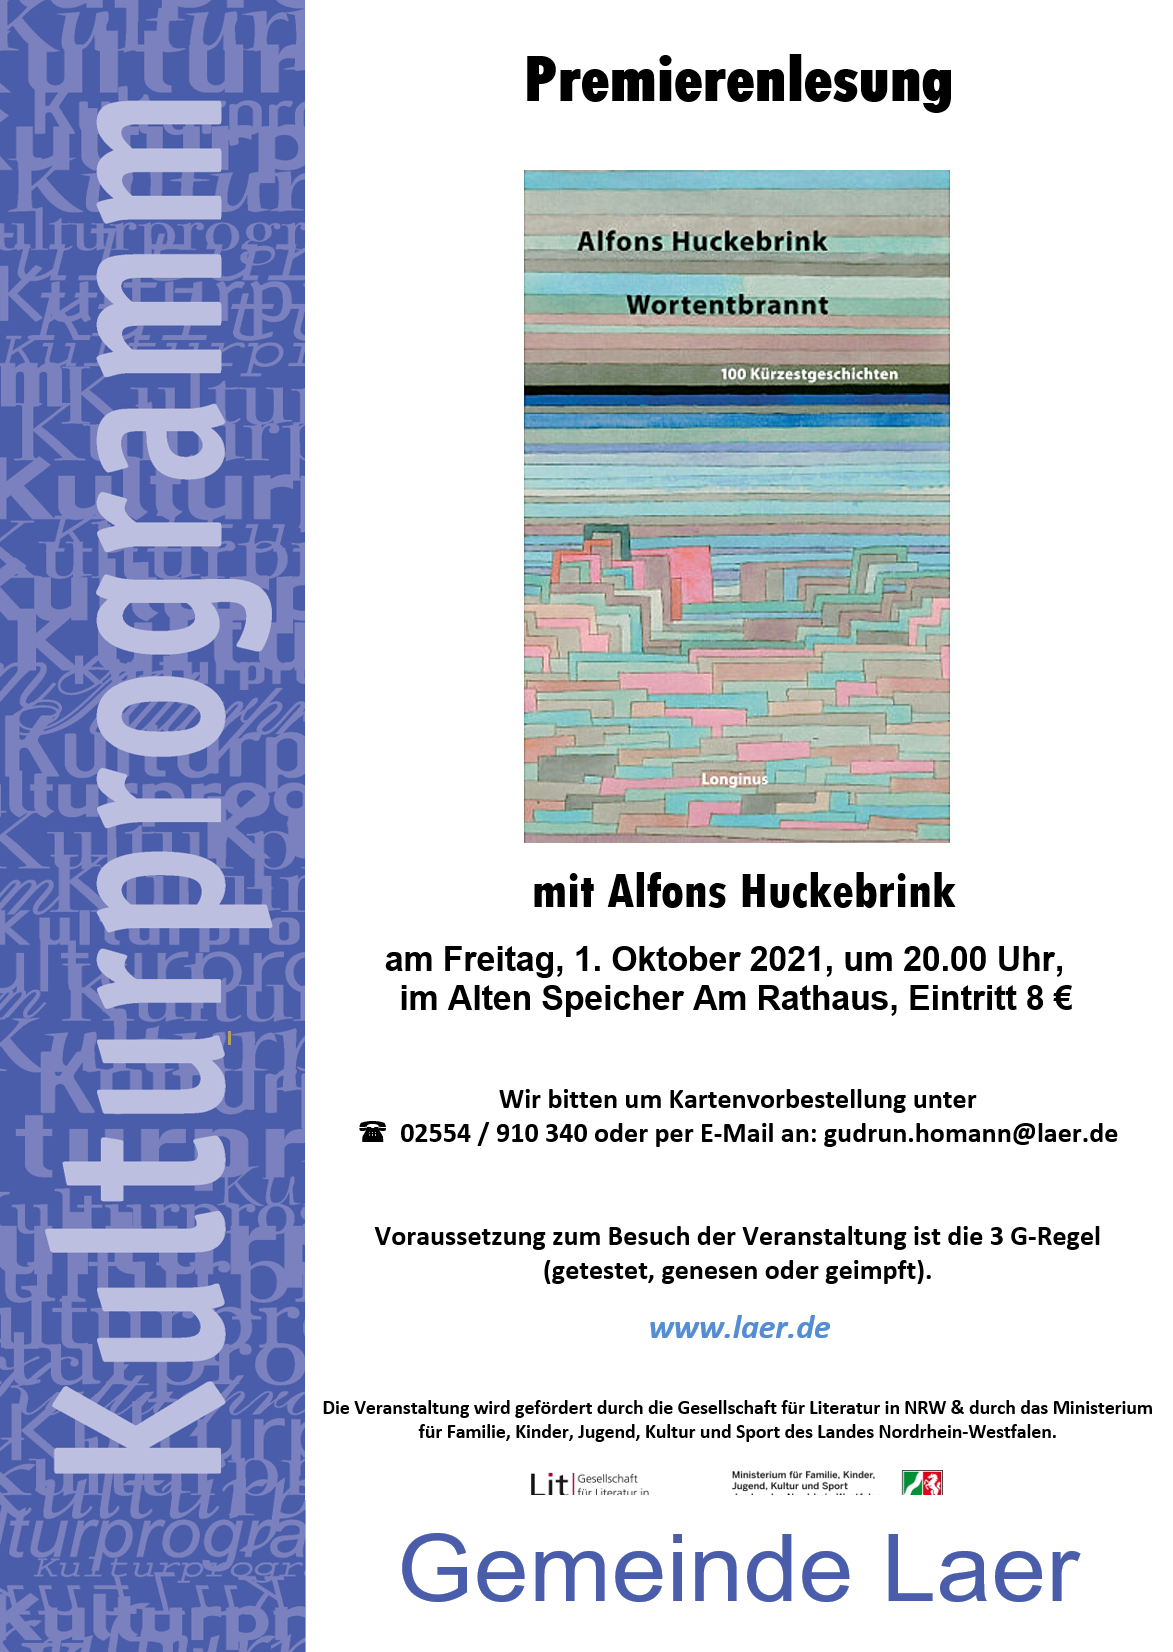 Premierenlesung - Alfons Huckebrink - Wortentbrannt